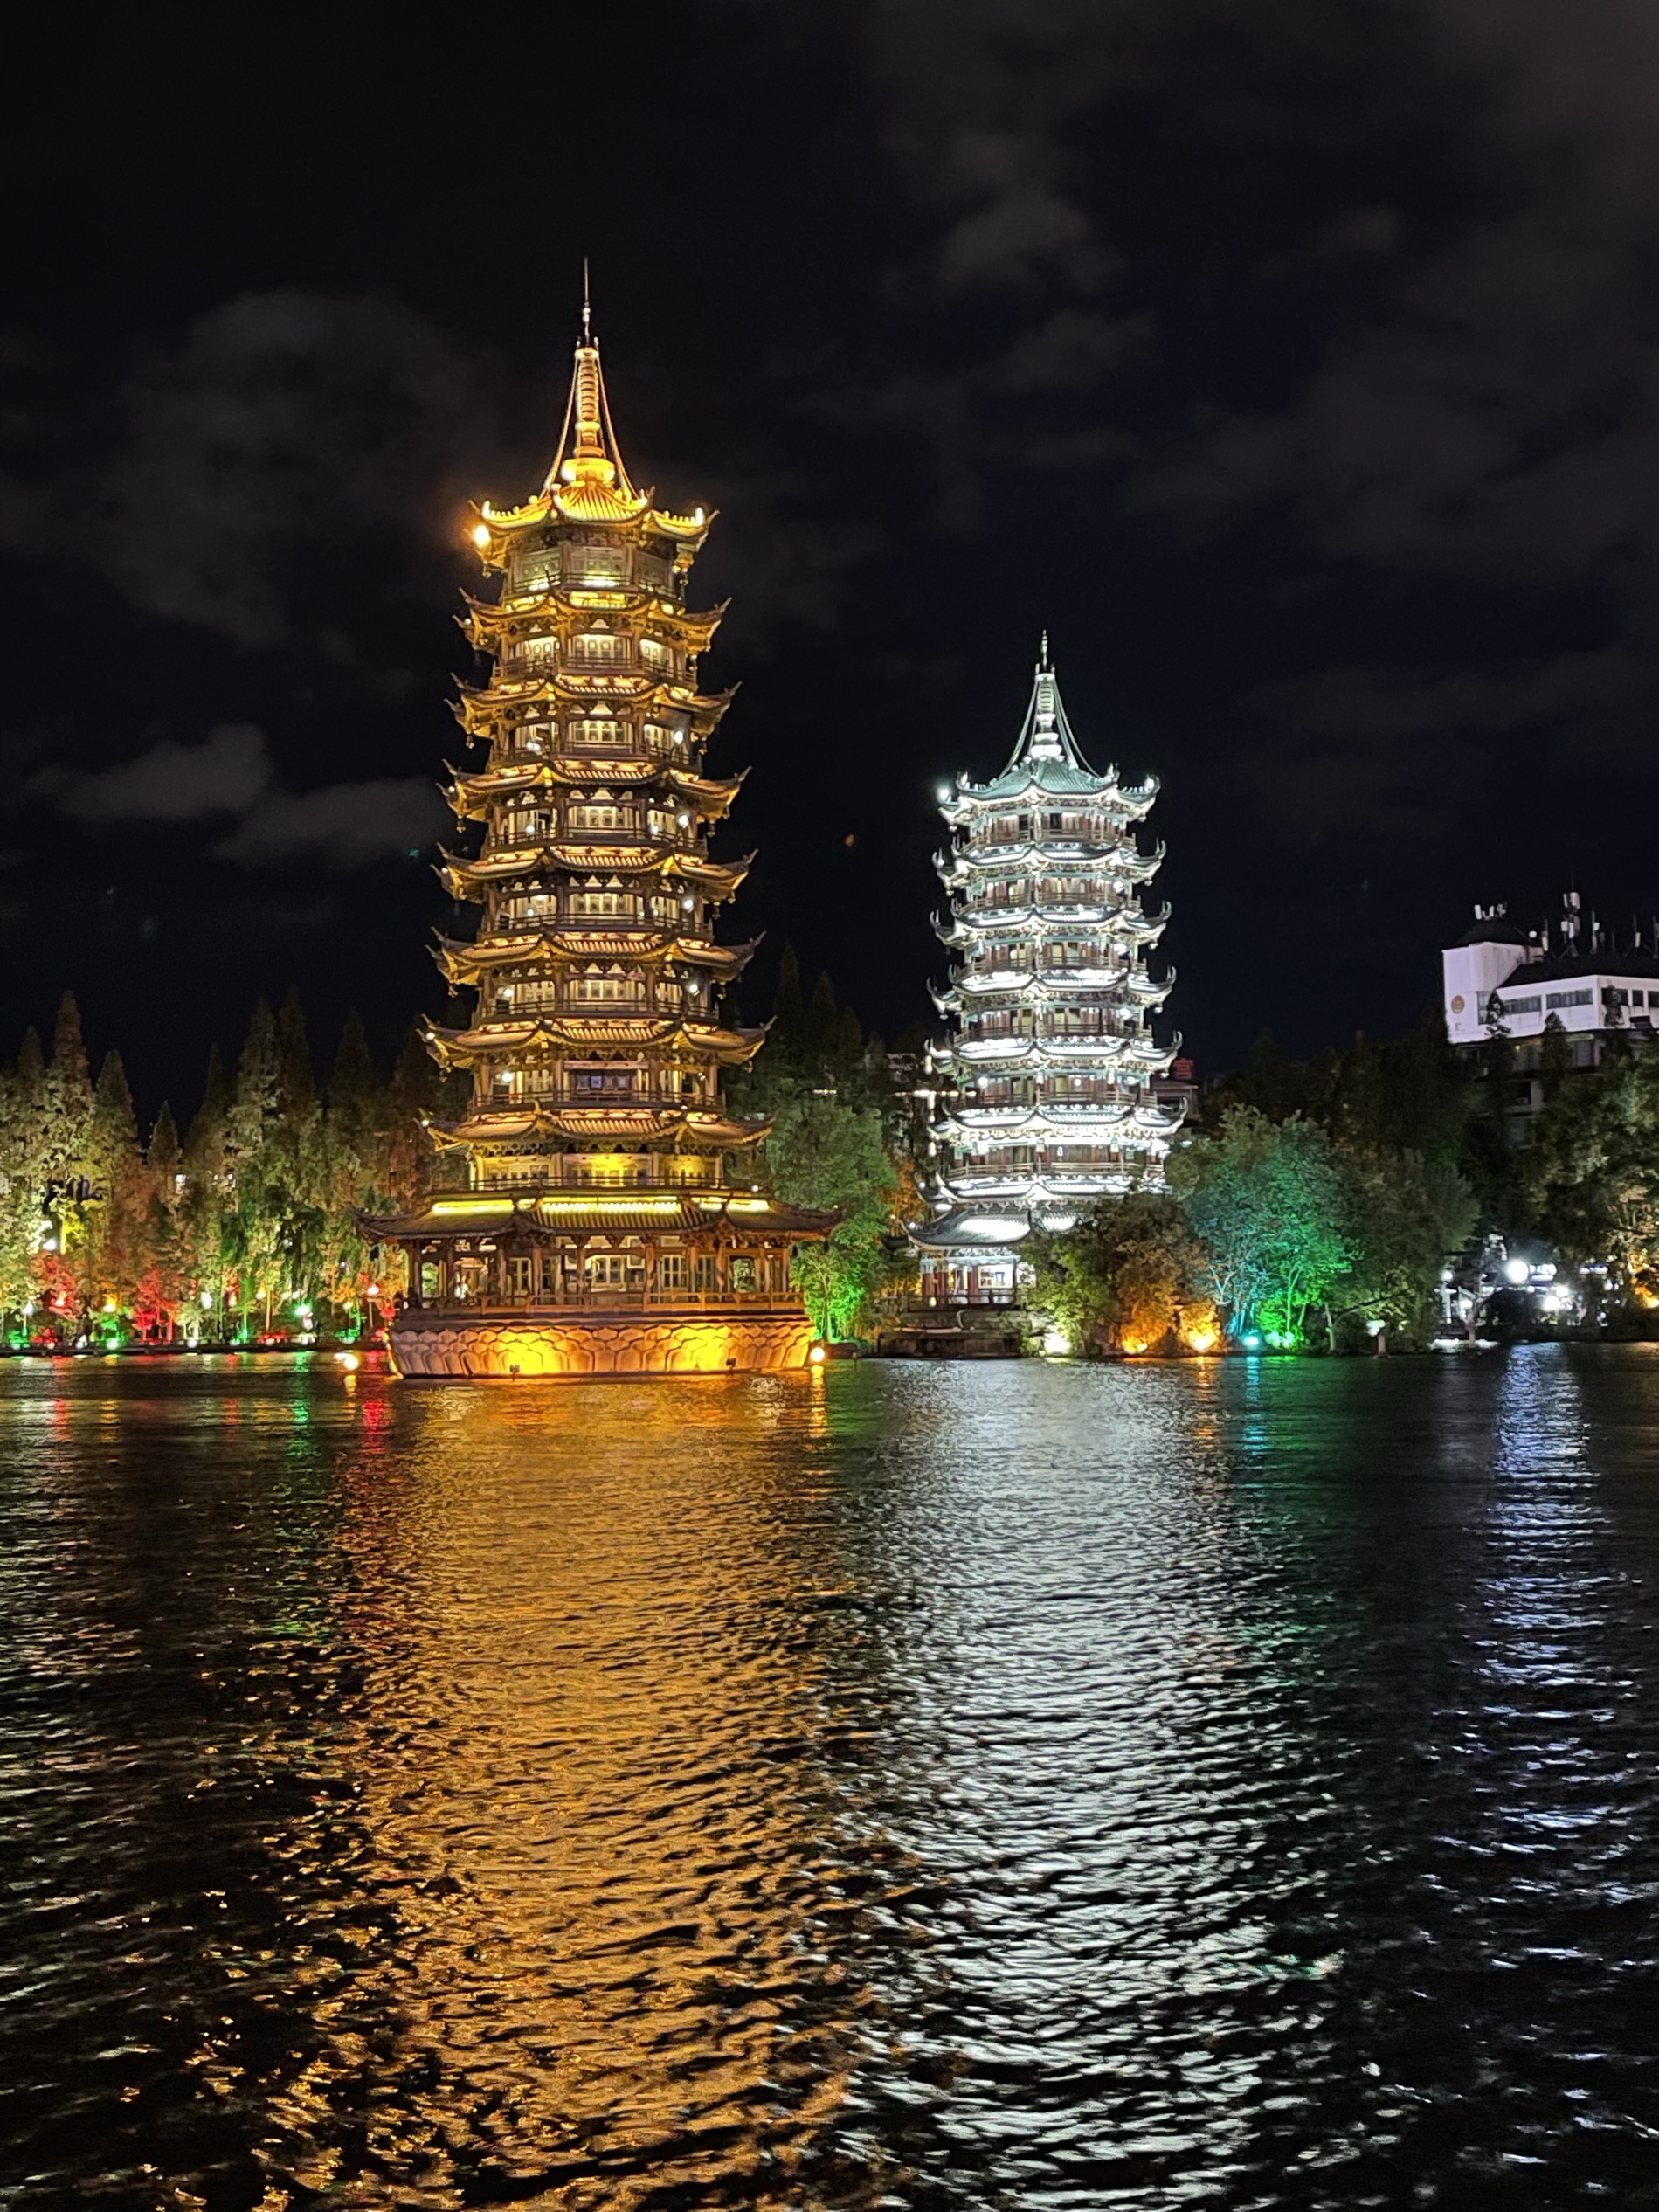 【携程攻略】桂林日月双塔景点,双塔是两江四湖的代表建筑，晚上去景色相当漂亮，湖水环绕和簇拥双塔…